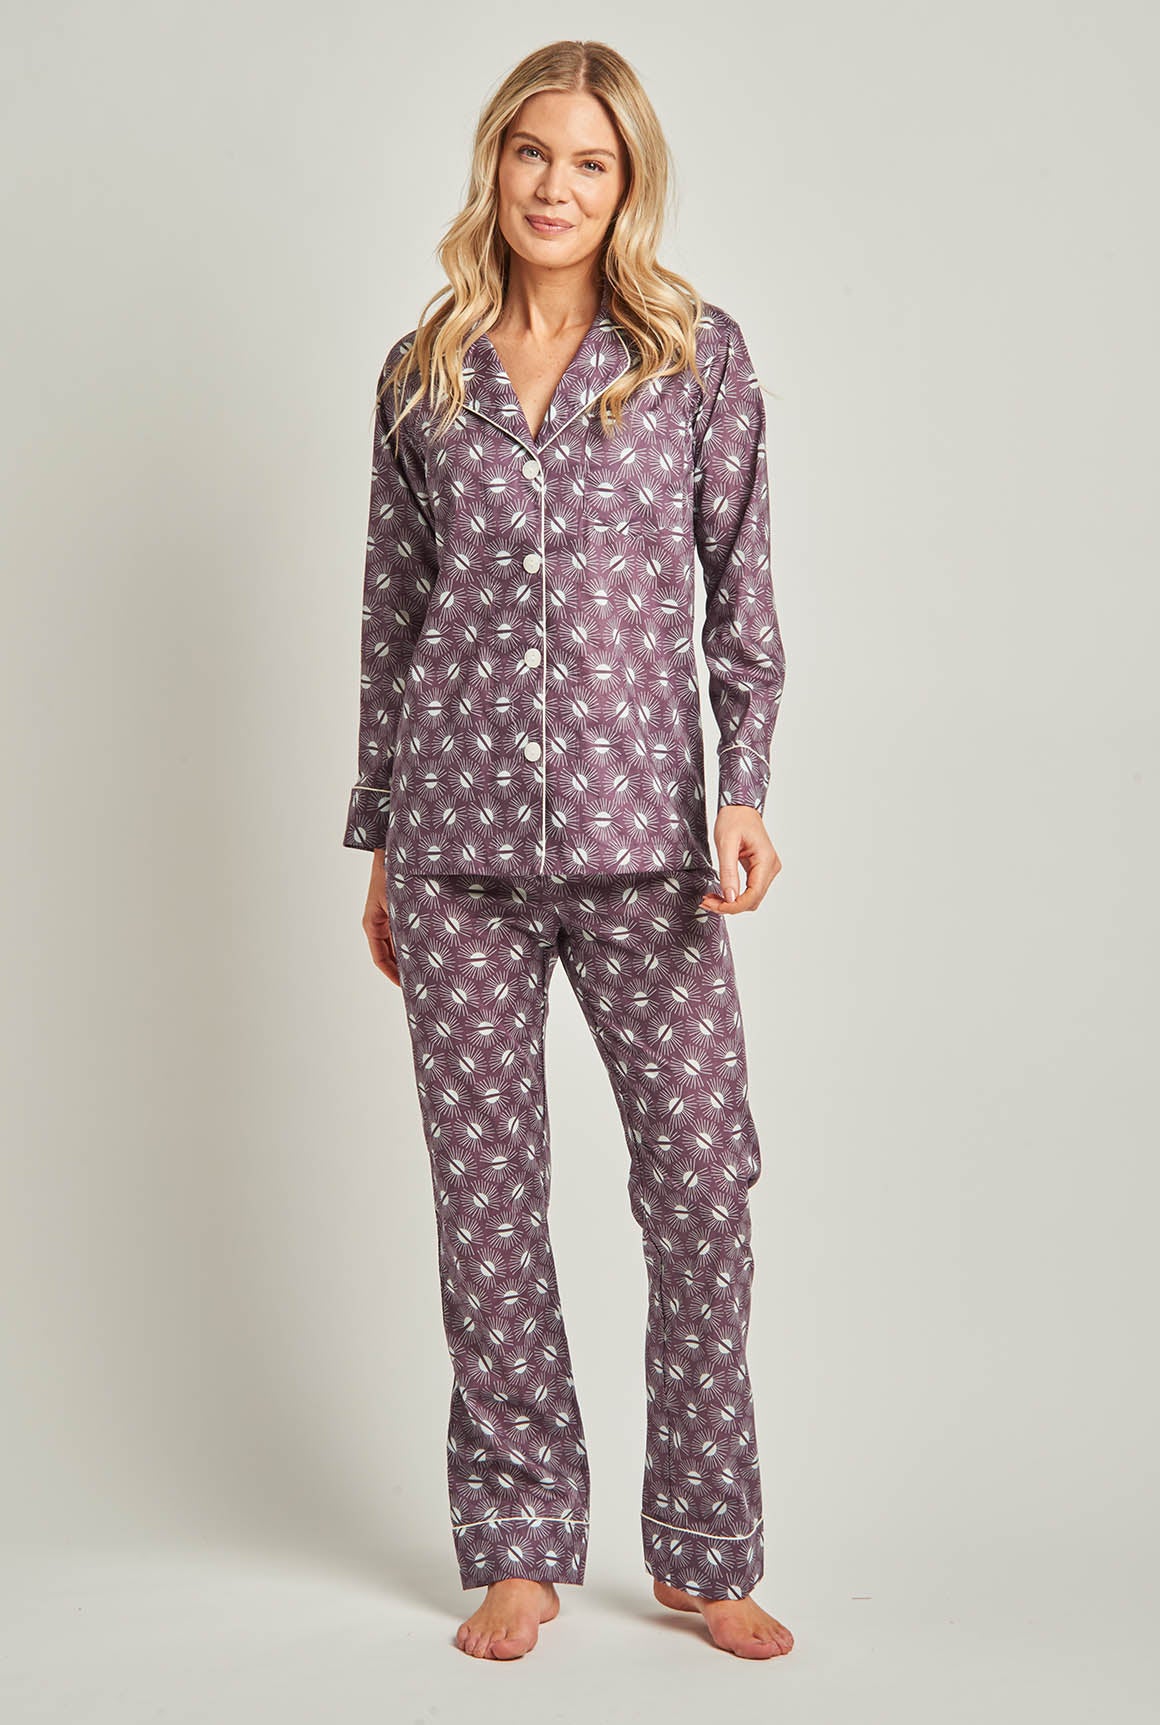 Savannah - Lightweight Cotton Voile Sleeveless Capri Pajamas